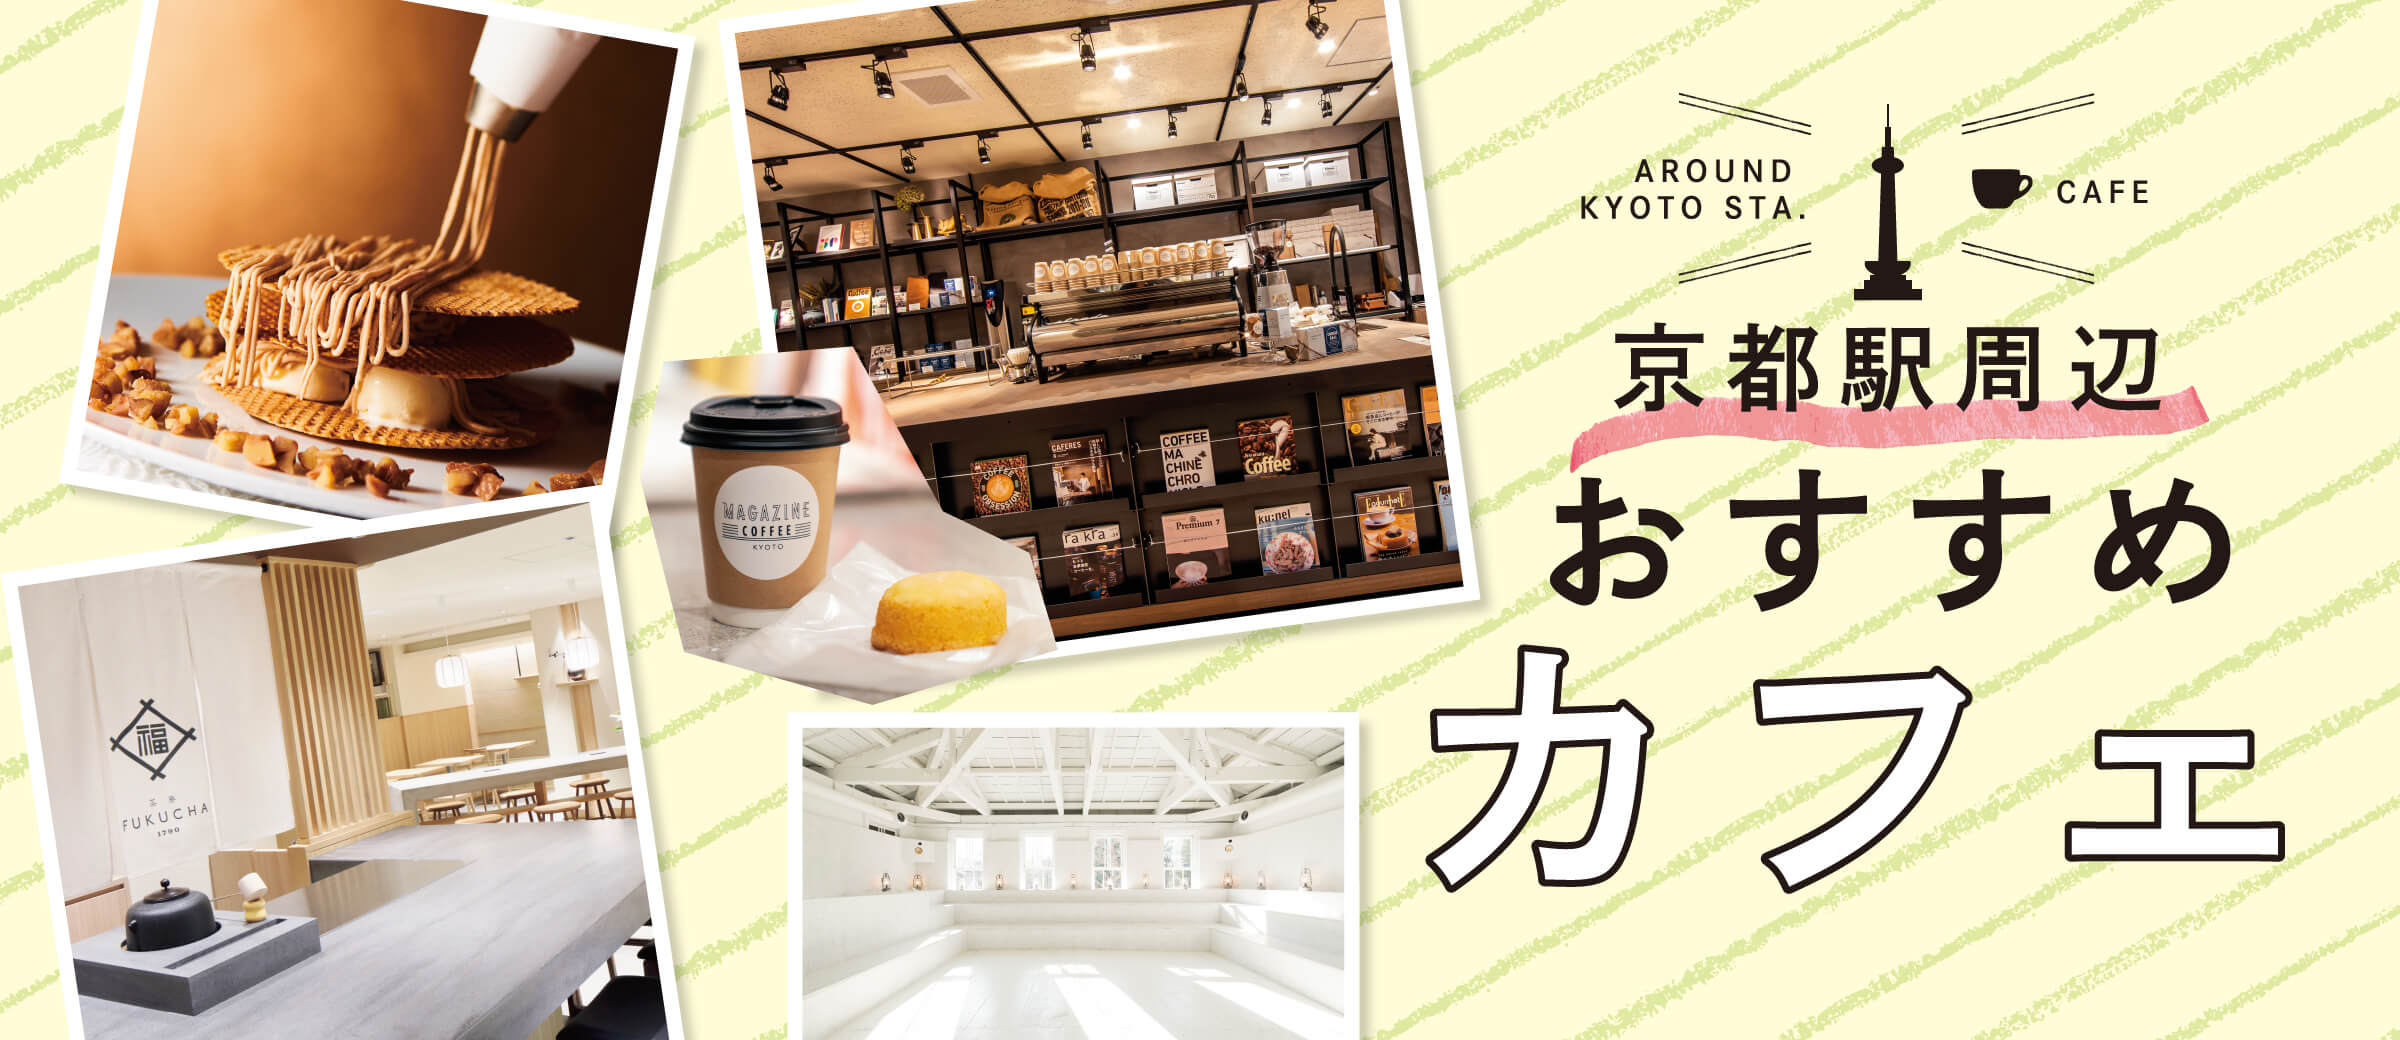 京都駅周辺 おすすめカフェ